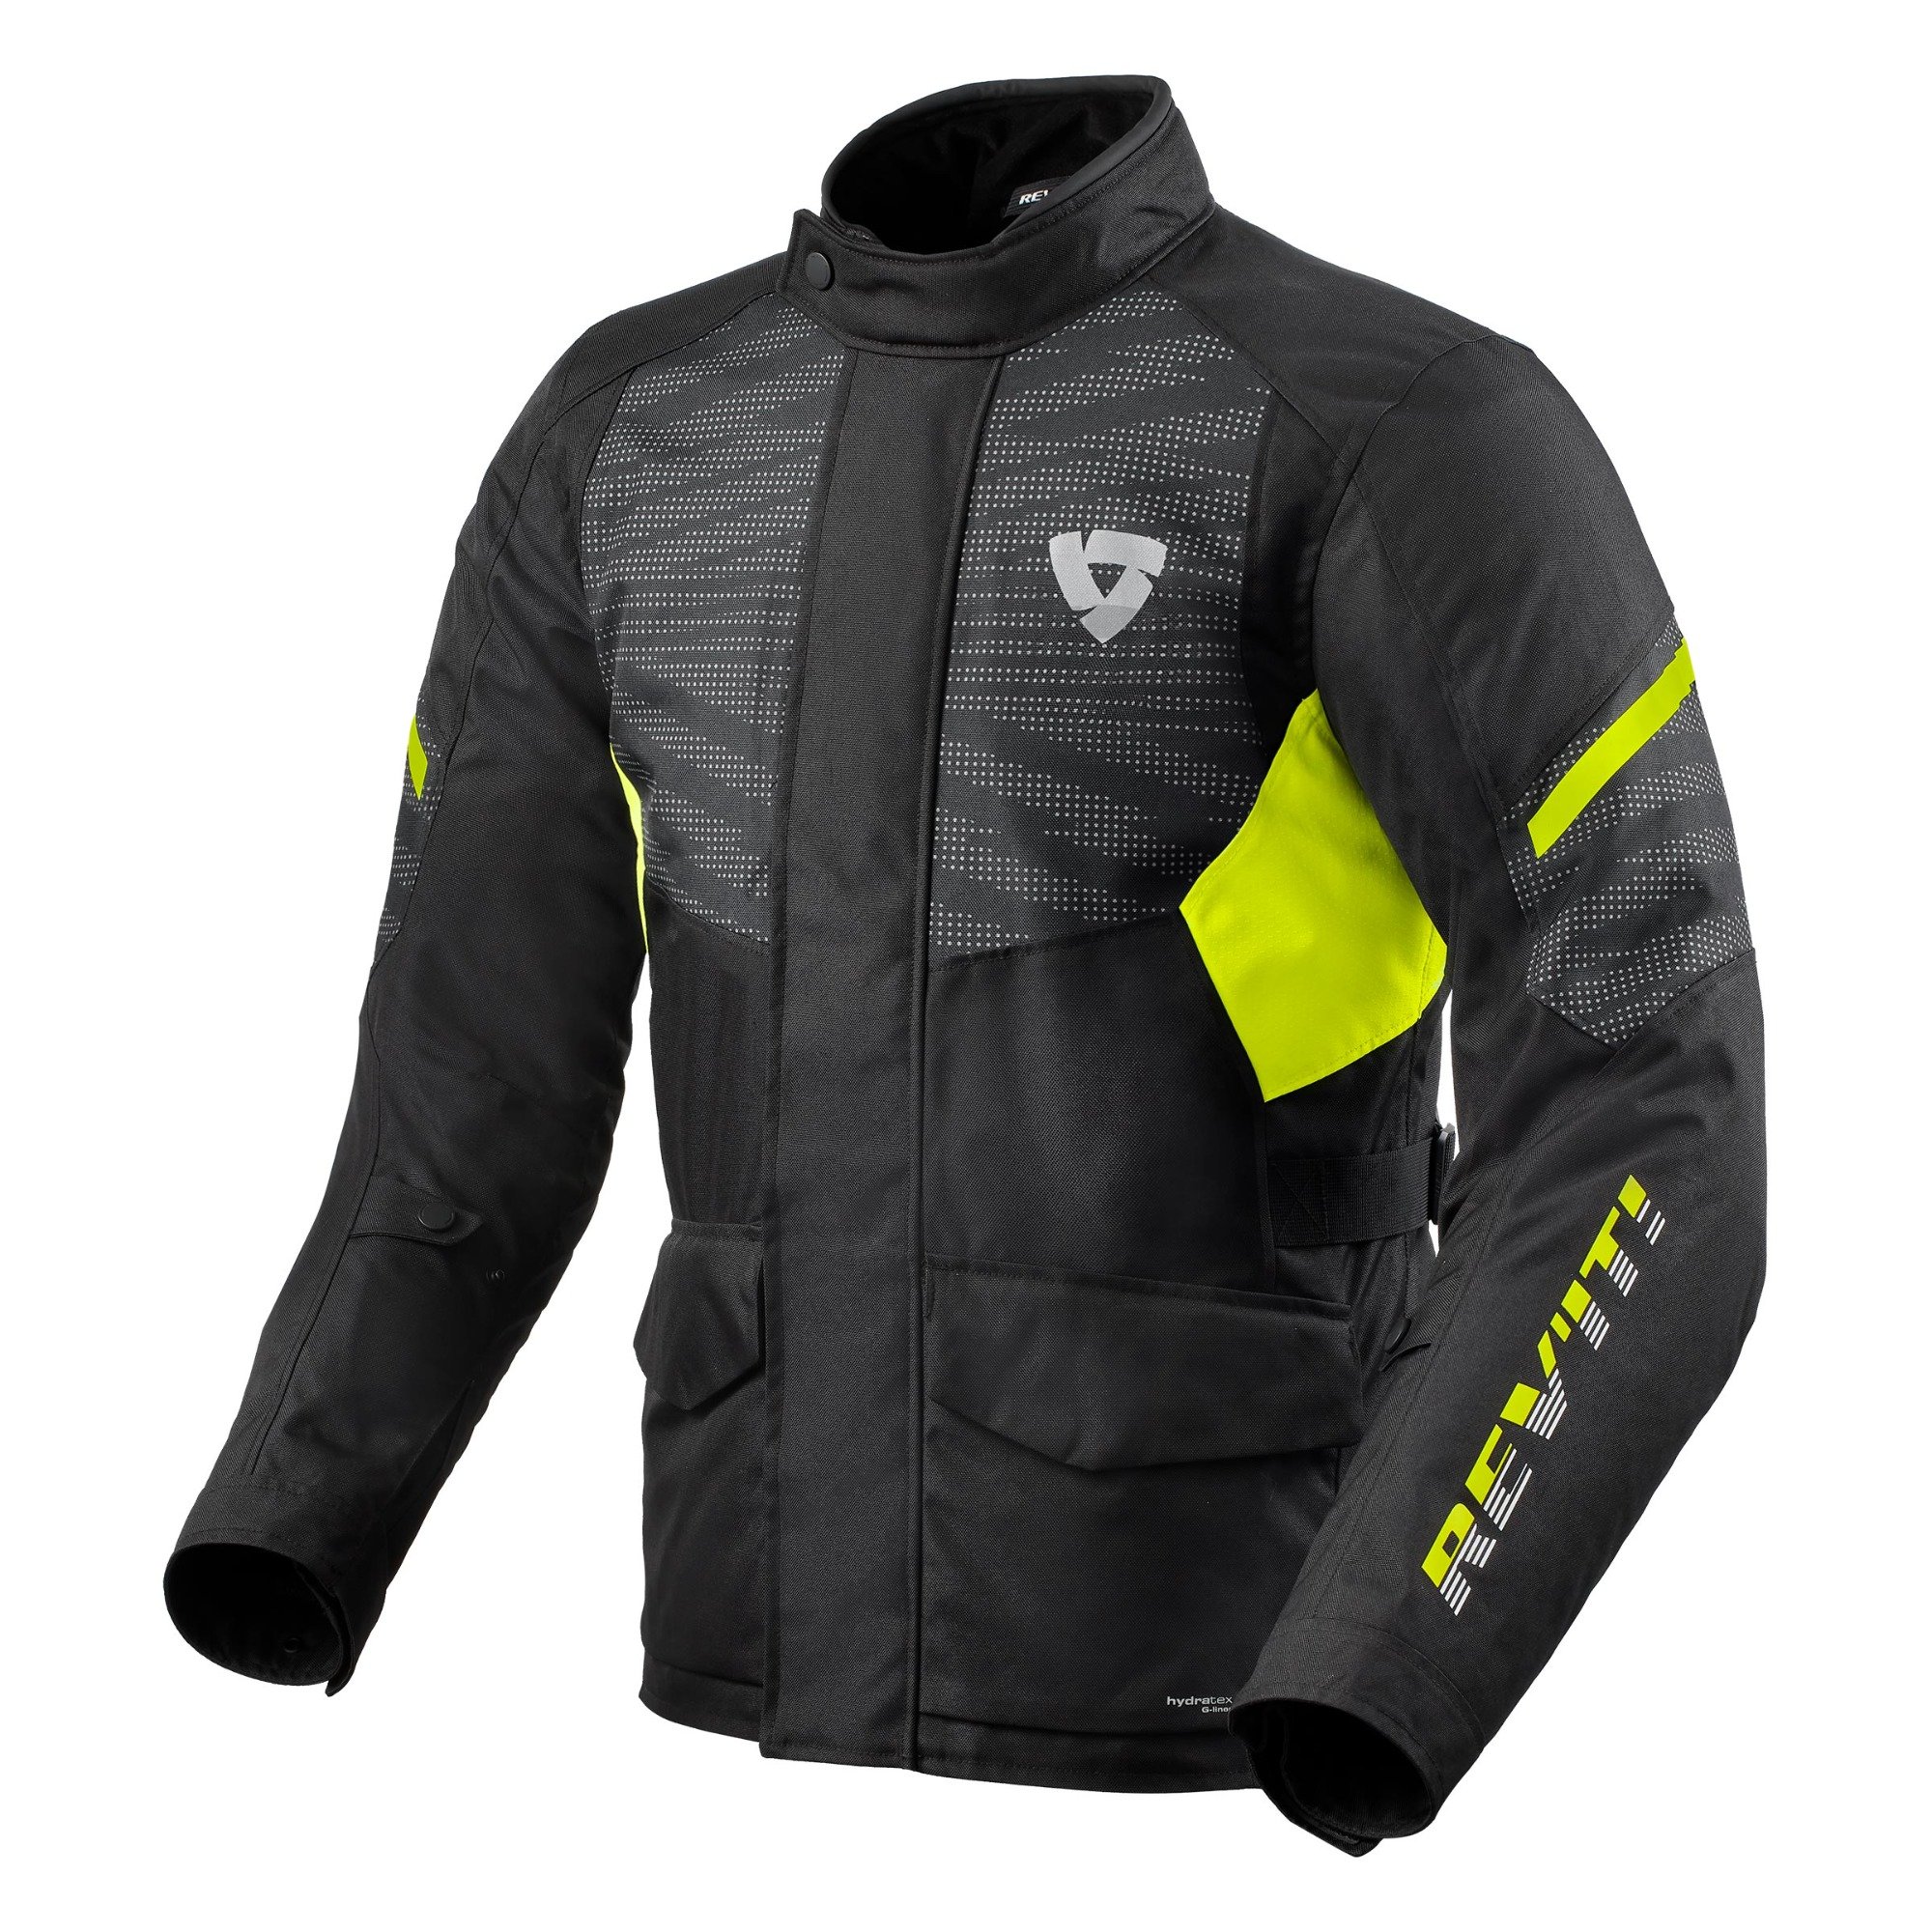 Image of REV'IT! Duke H2O Jacket Black Neon Yellow Size M EN